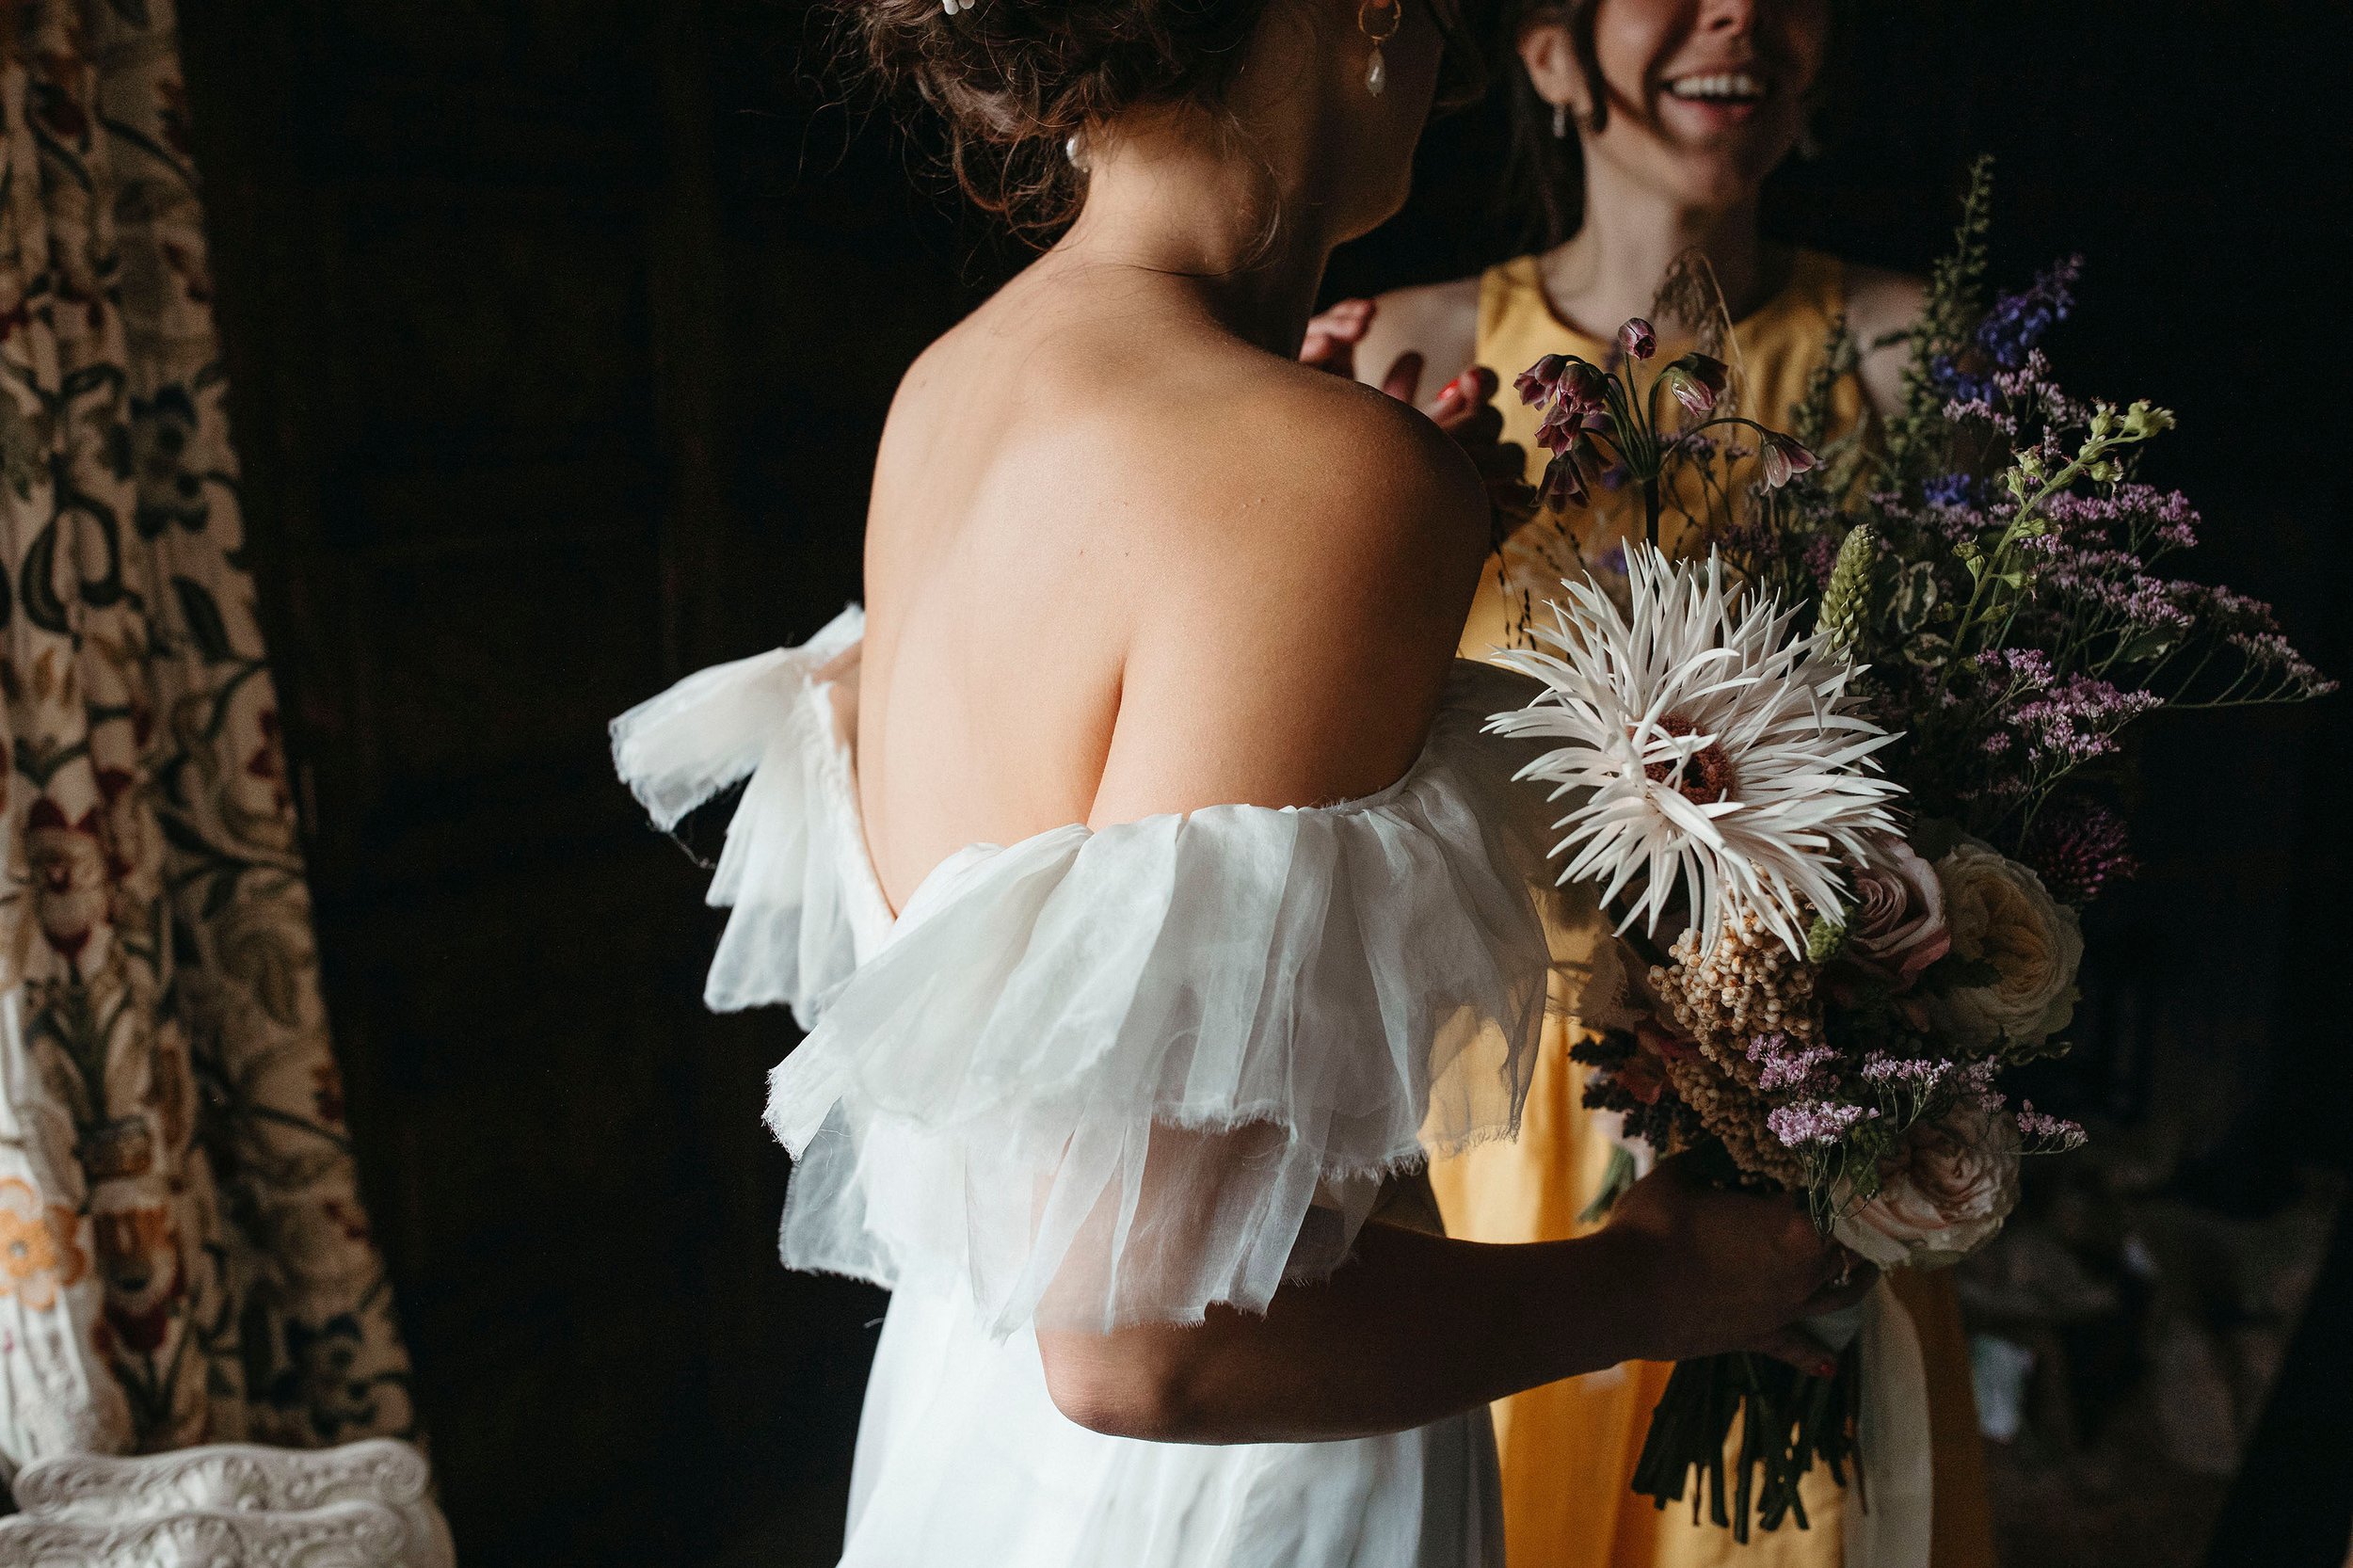 Beautiful bride Sophie wears the Mayfair dress by Halfpenny London!